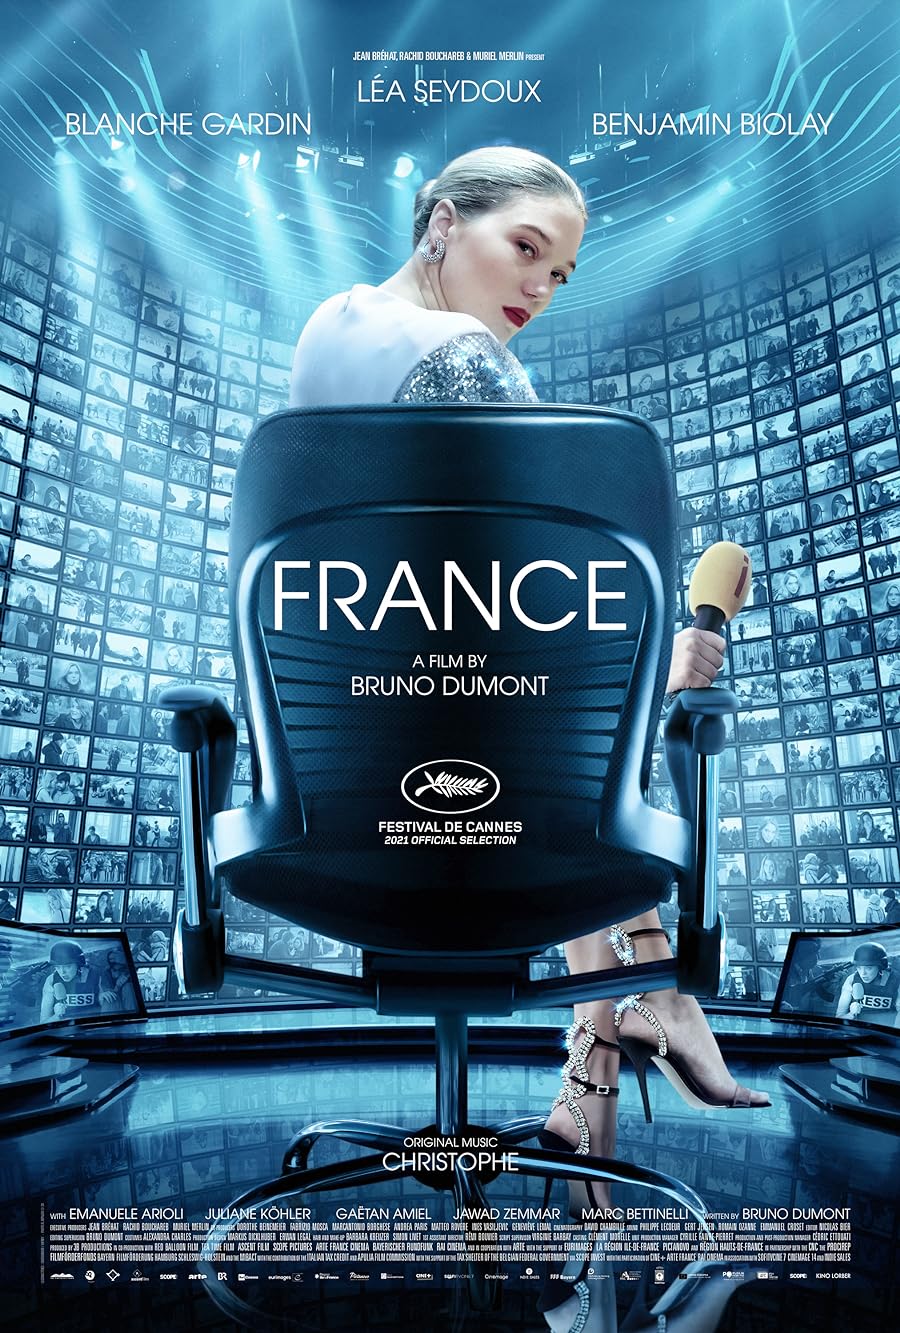 دانلود فیلم France 2021